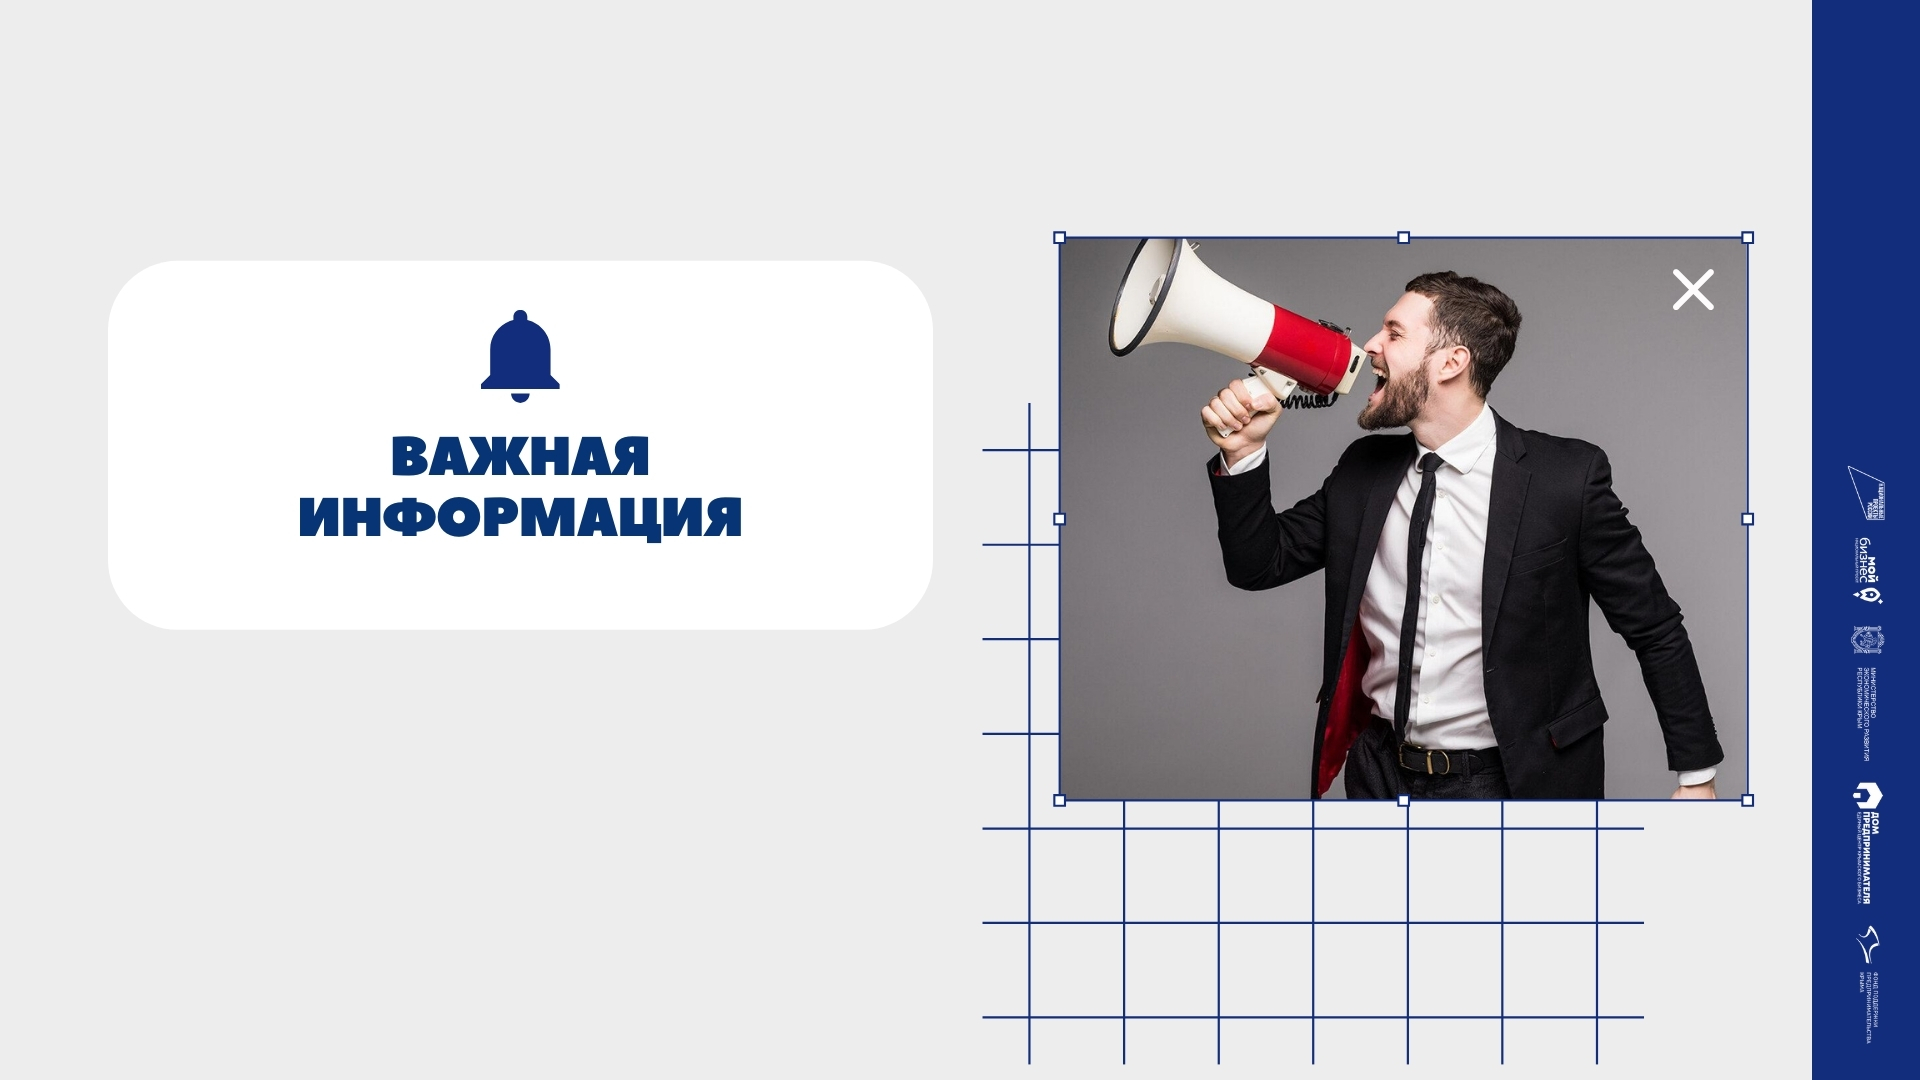 Всероссийская онлайн-конференция по маркировке пива и пивных напитков